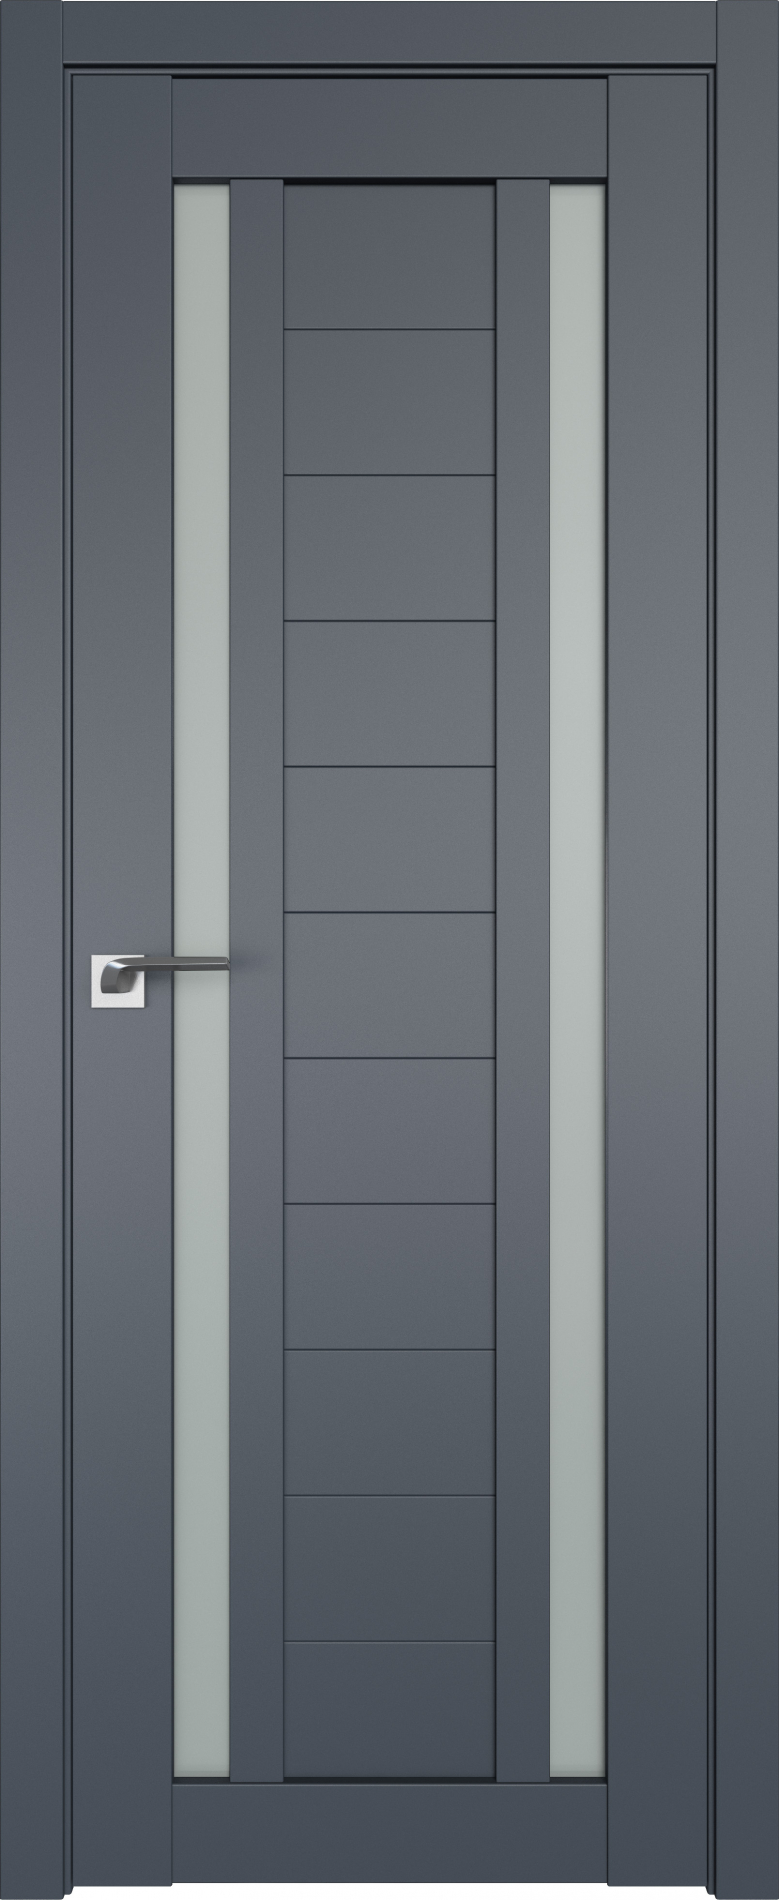 межкомнатные двери  Profil Doors 15U антрацит